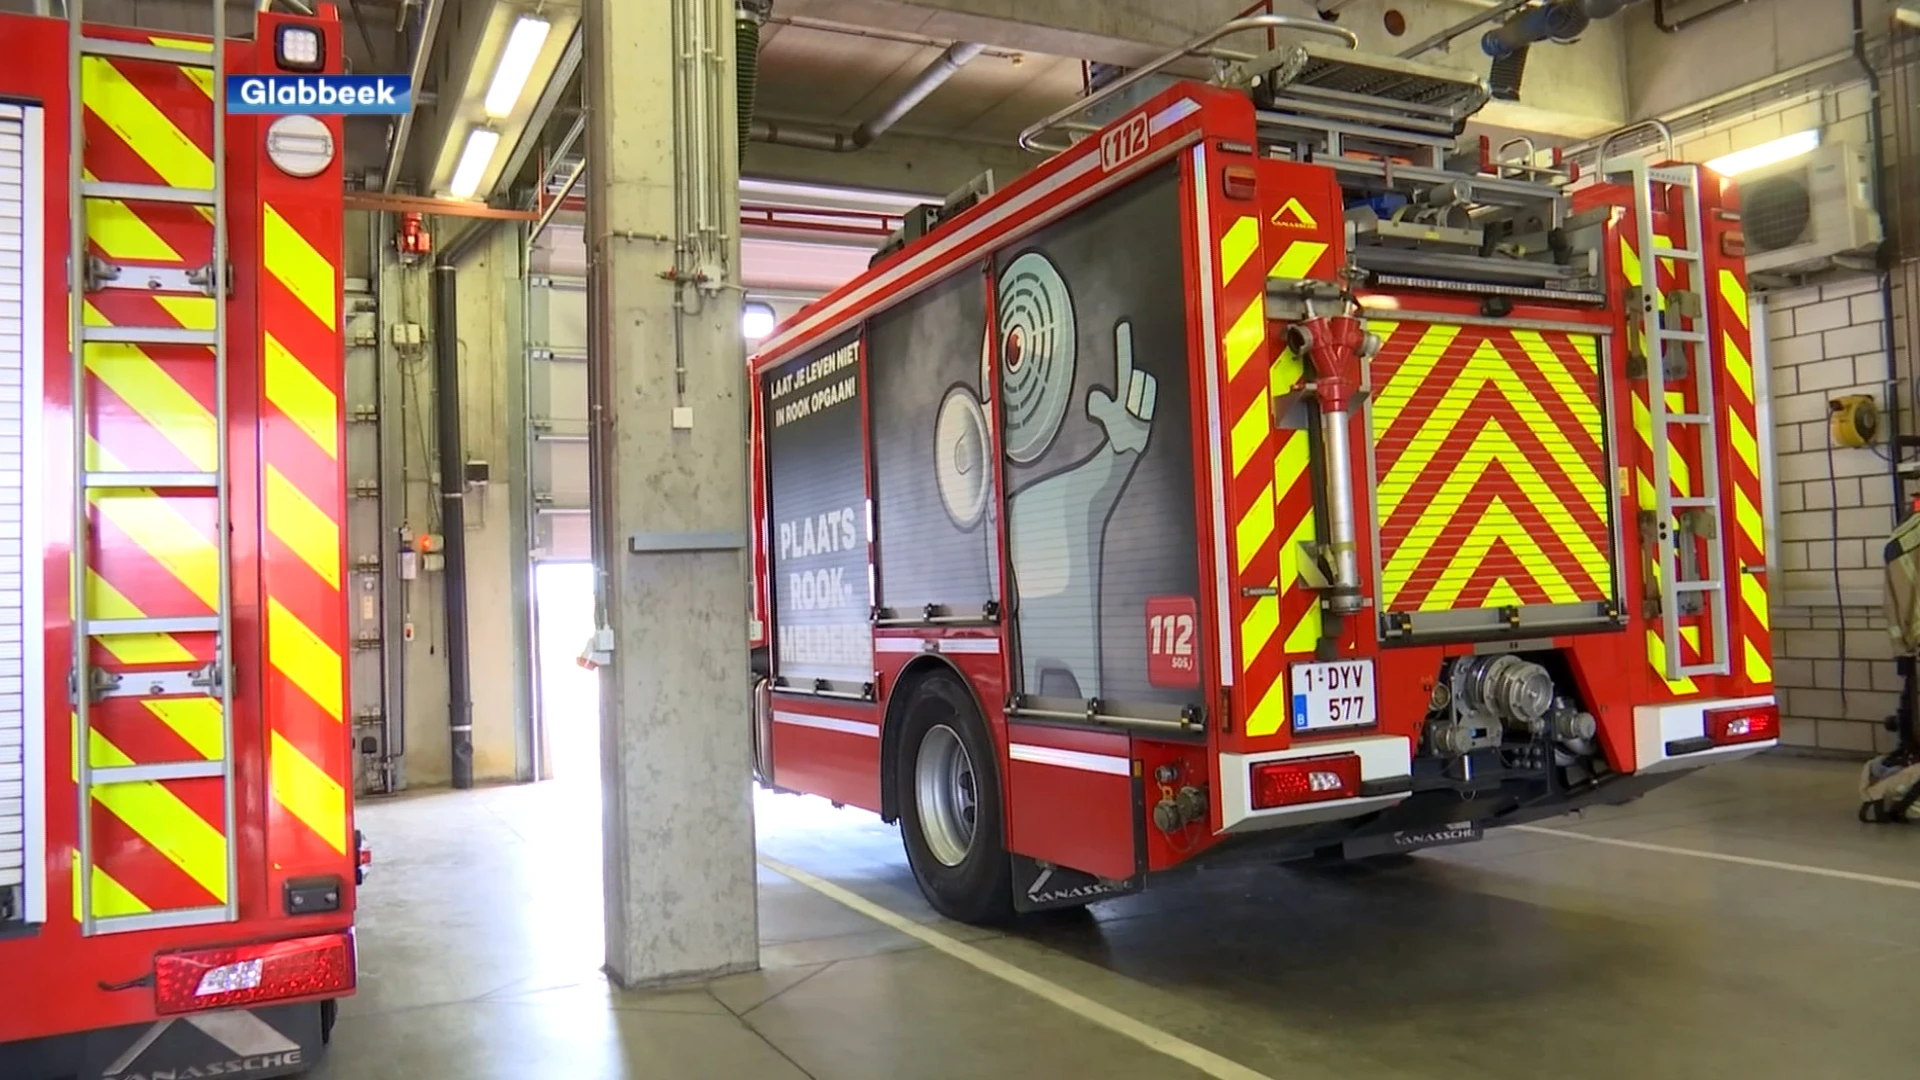 Werkingskosten brandweer met bijna 40% gestegen in drie jaar tijd, burgemeester Reekmans: "Onaanvaardbare stijging"